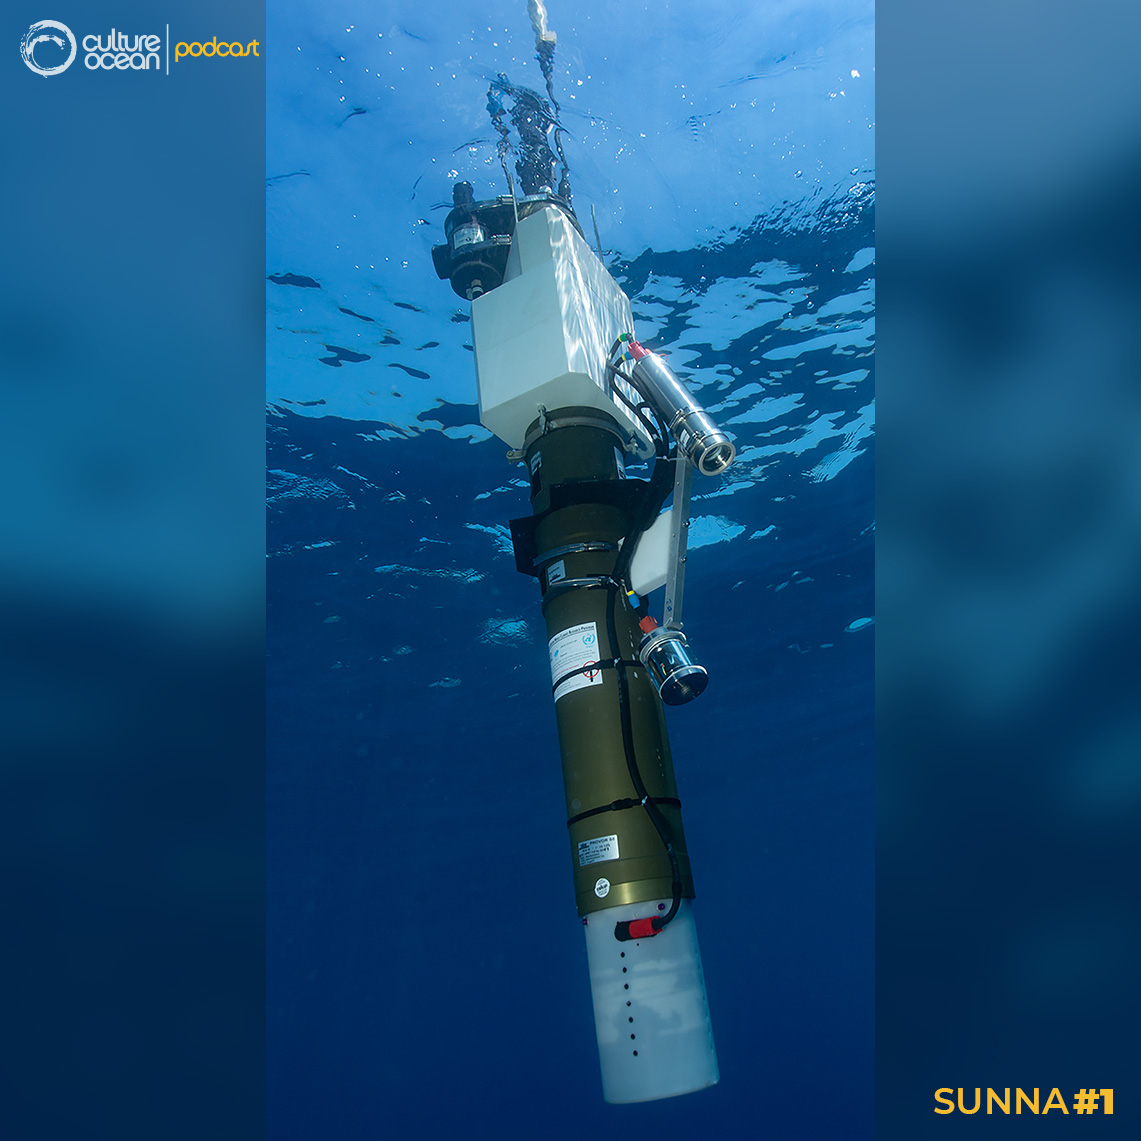 Sunna #1 - Sunna : Flotteur profileur Biogéochimique-Argo à la surface de l’eau.